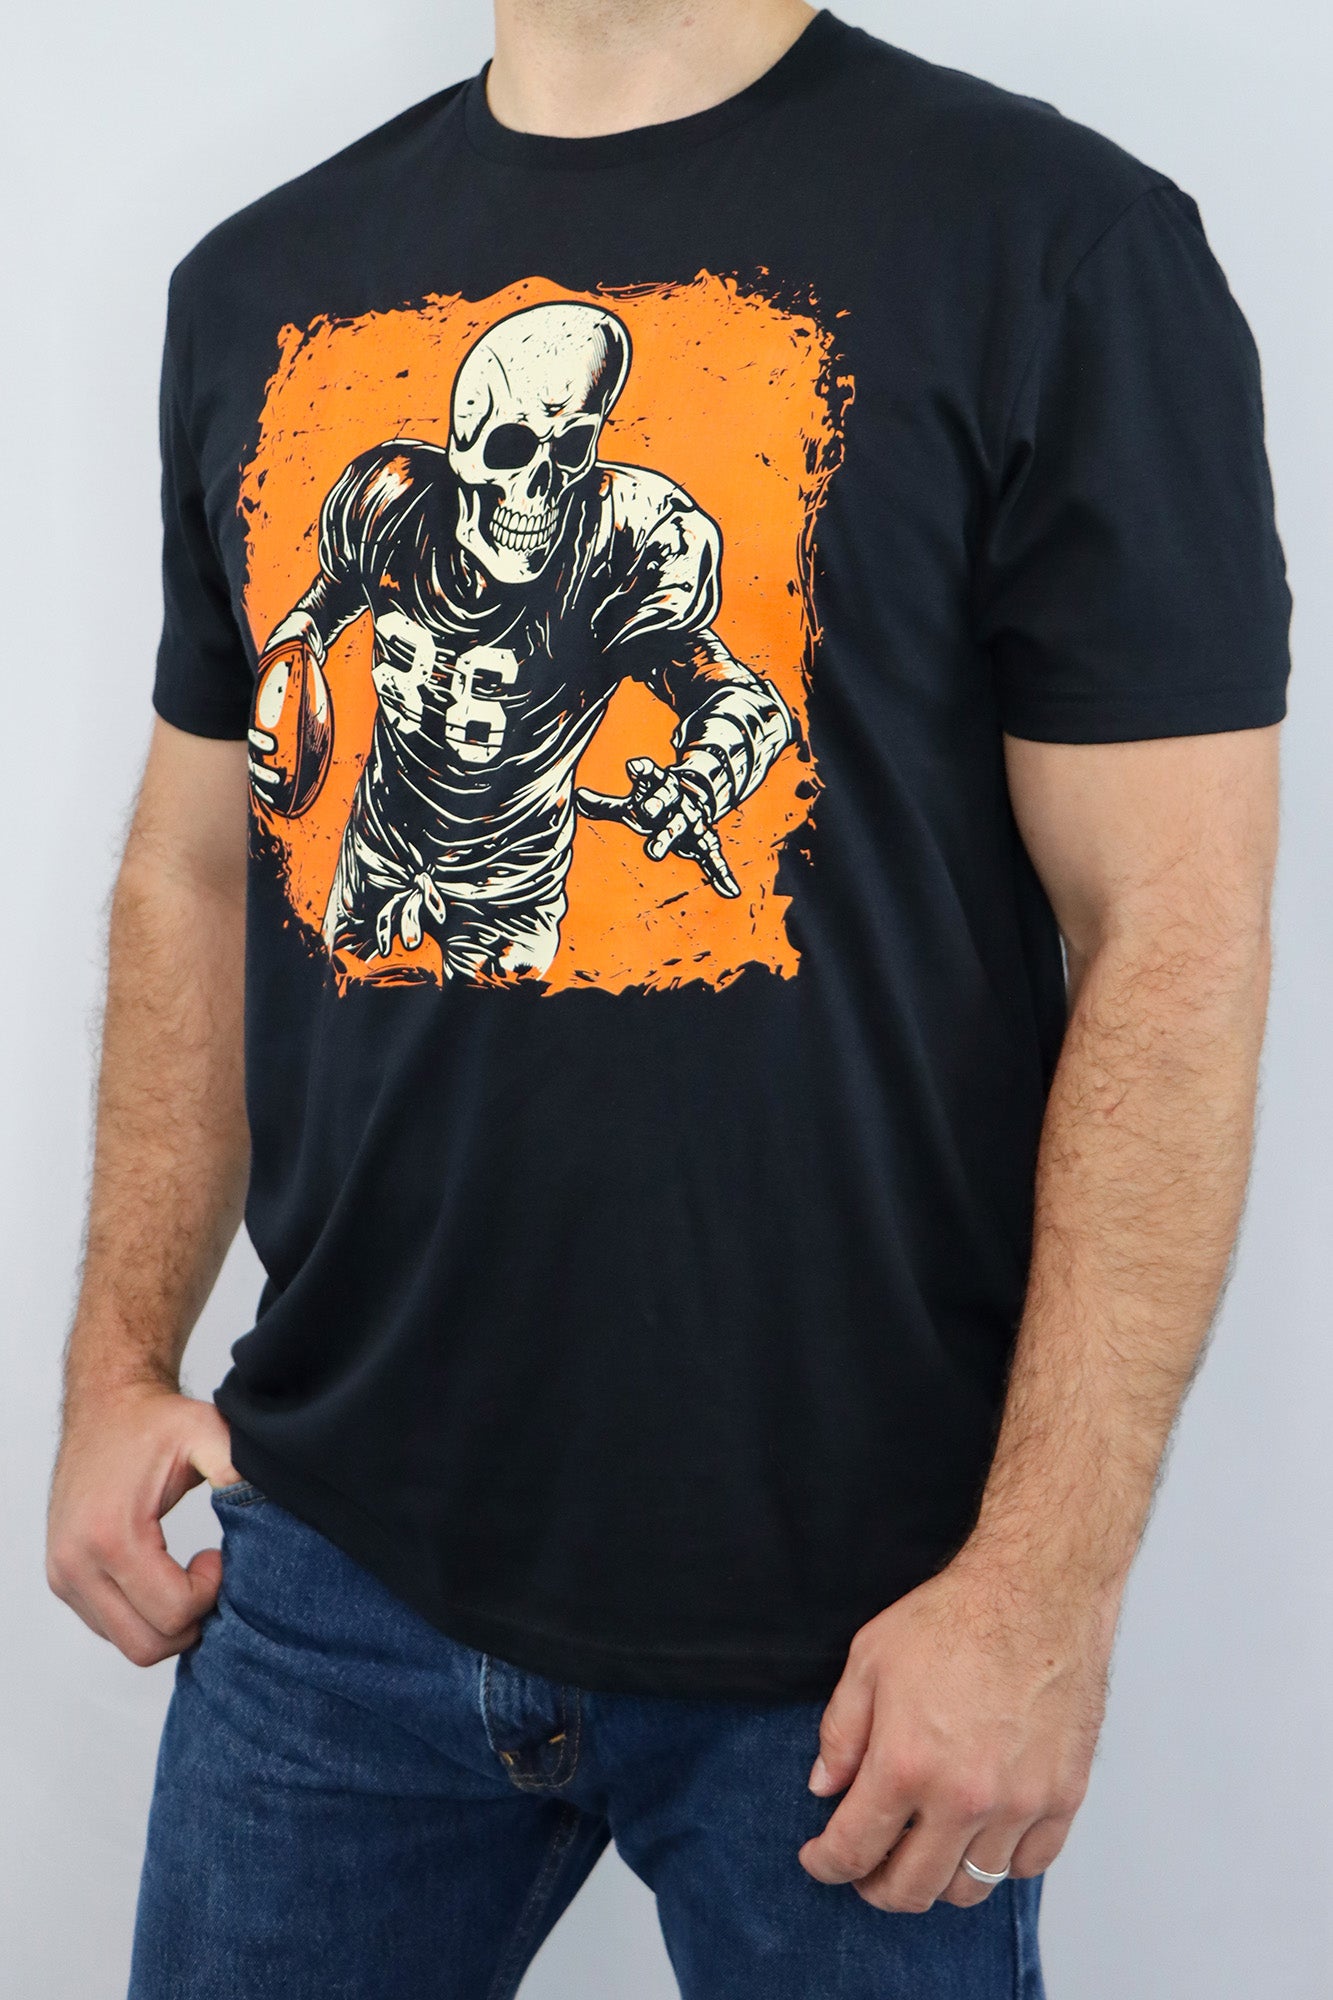 Football 2 Skeleton (orange & black) Unisex Short Sleeve Tee- Black